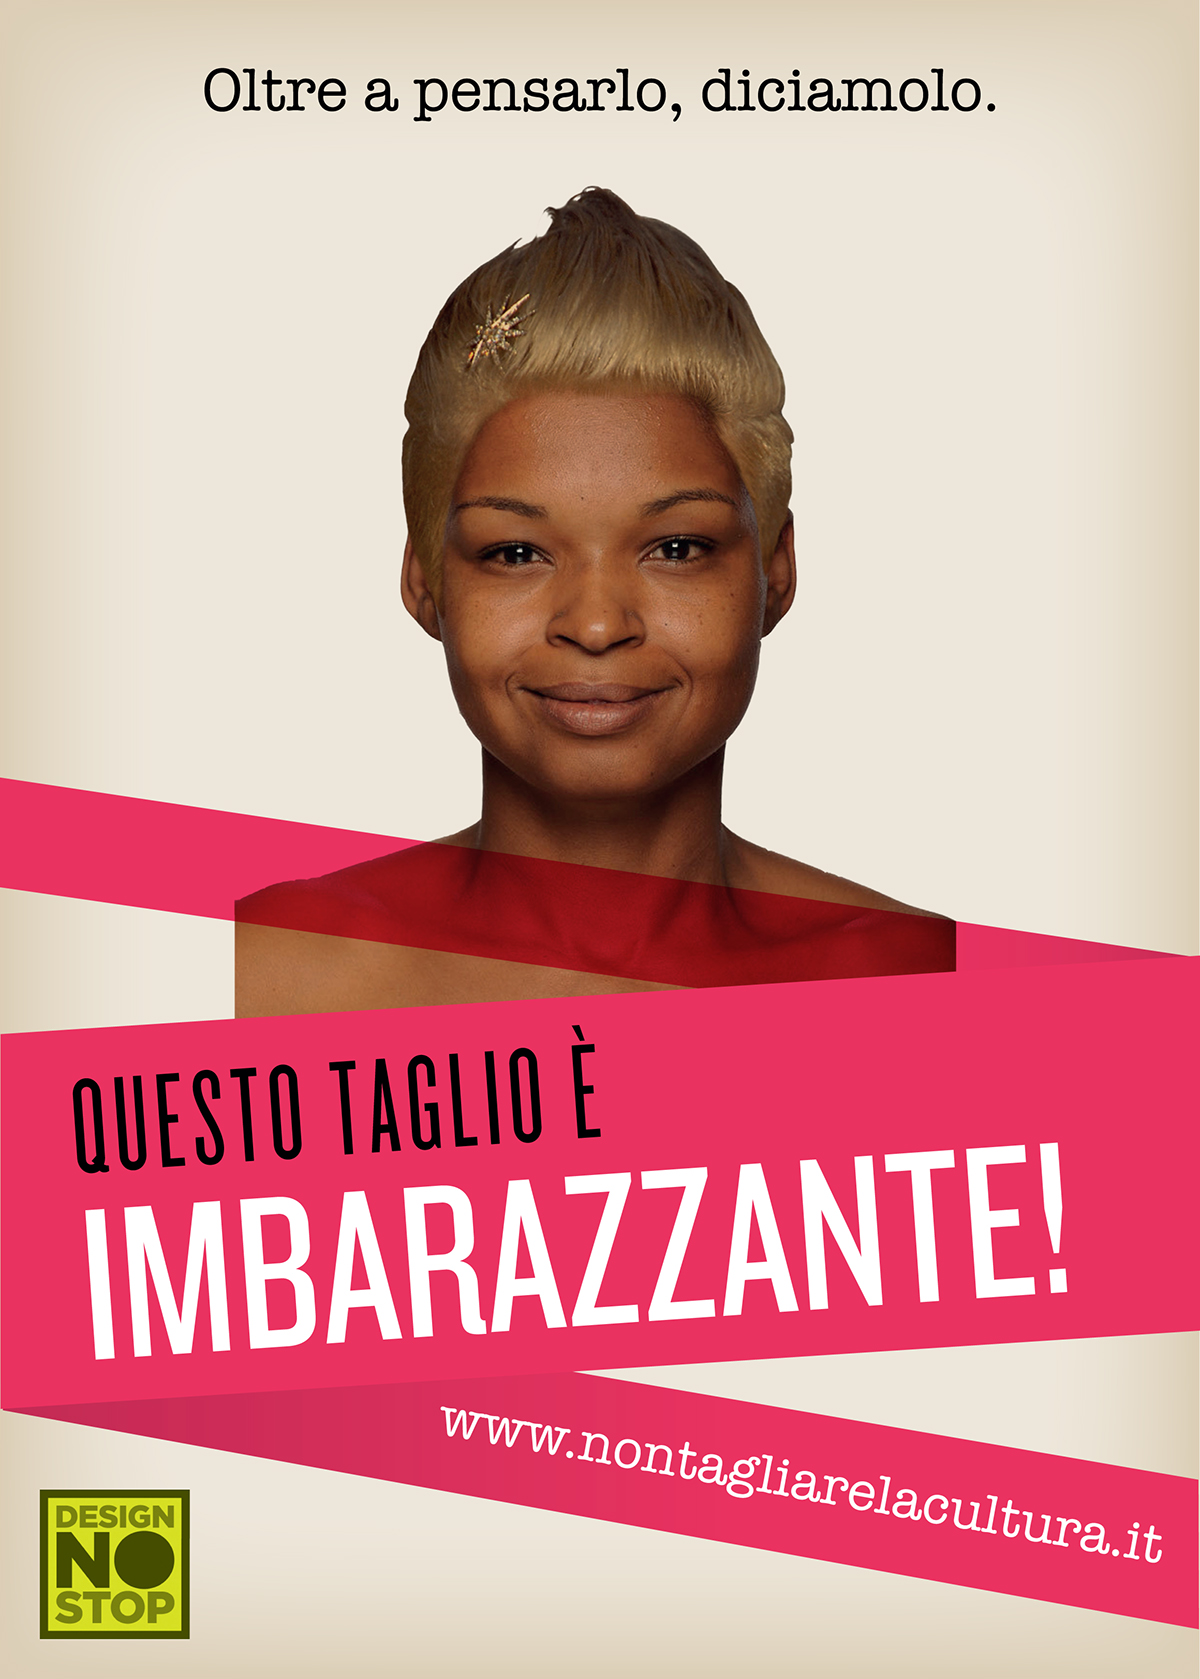 ddl Gelmini poster promocard postcard stickers Adesivi Taglio tagli cut haircut embarassing imbarazzante riforma cultura